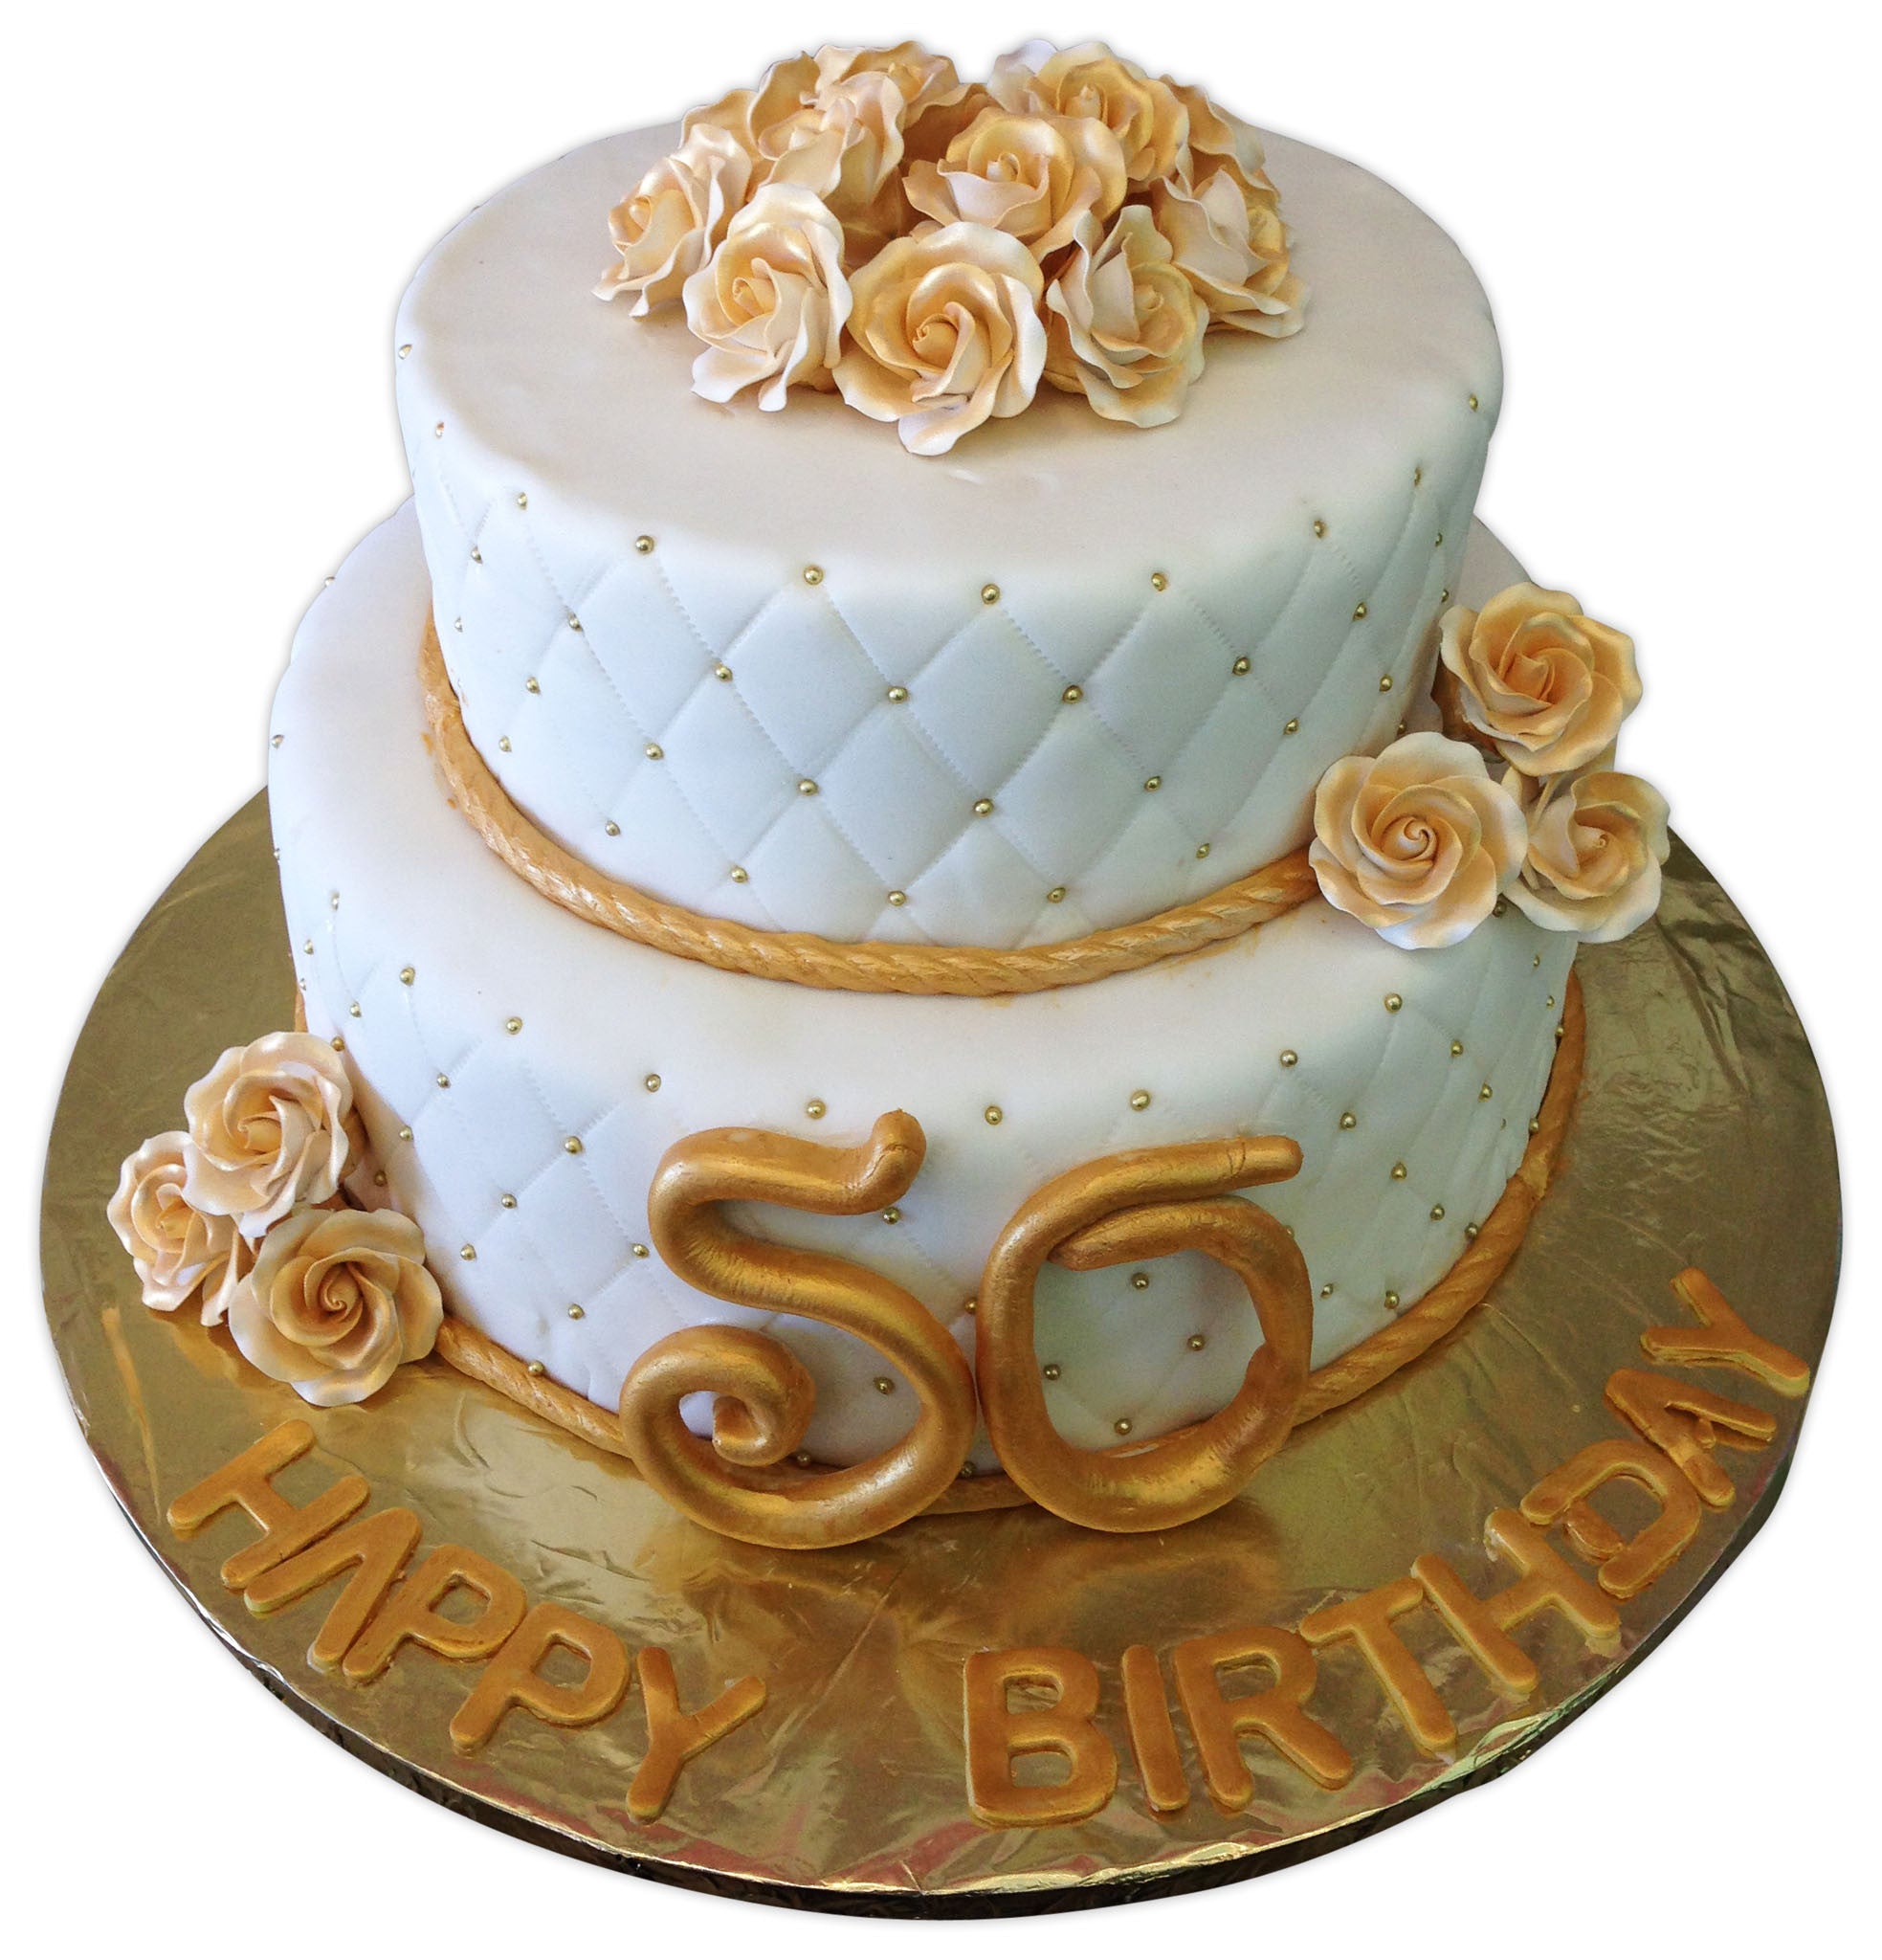 50th birthday Cakes - Eve's Cakes - Dublin